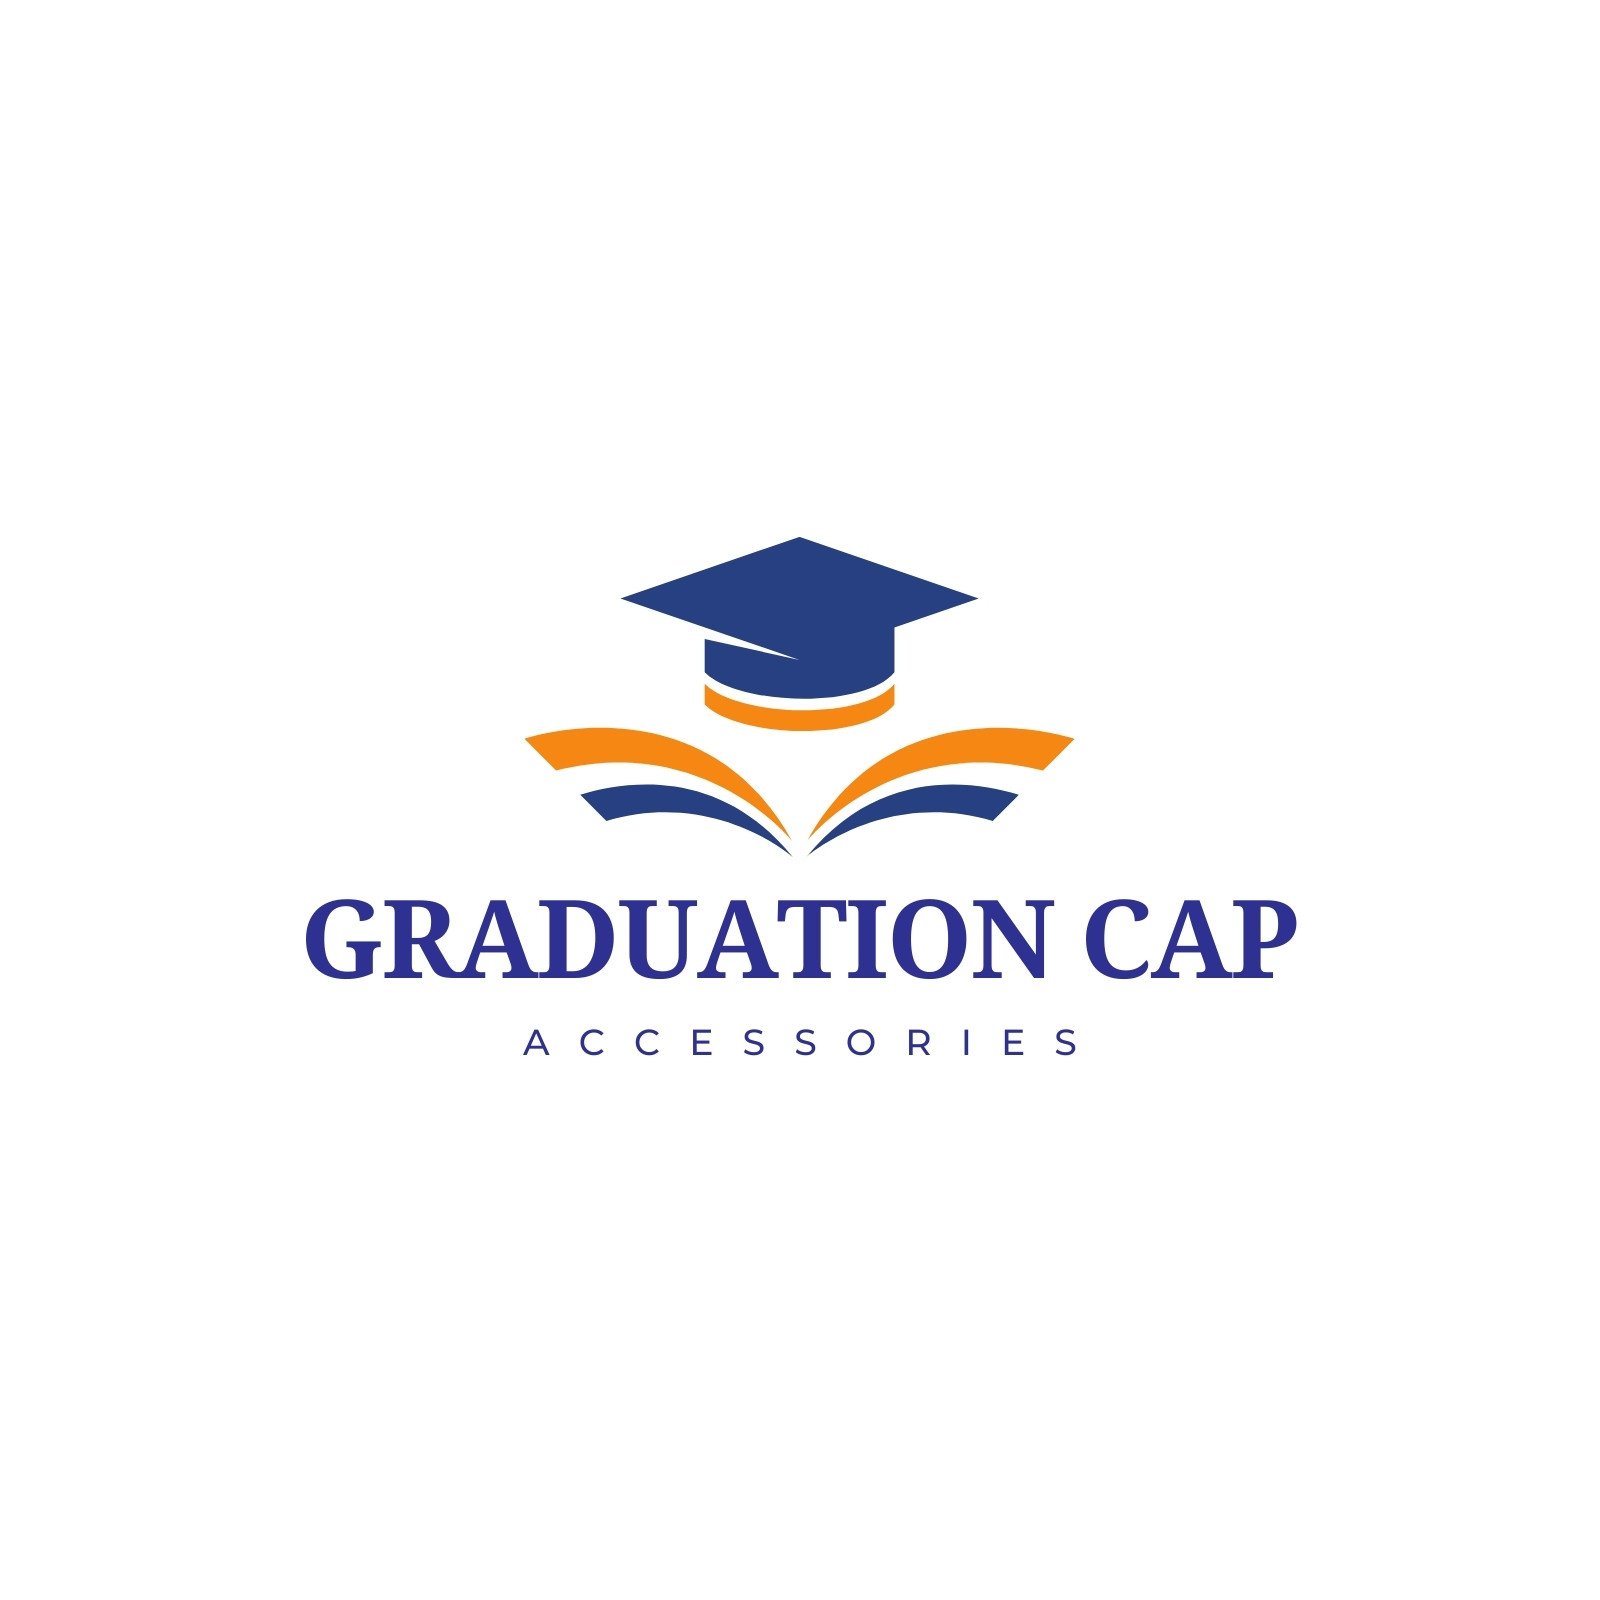 Graduation Cap Template, Graduation Hat Template, Graduate Cap Template,  Blank Graduation Cap, Graduation Cap Sublimation, Canva SVG, PNG 